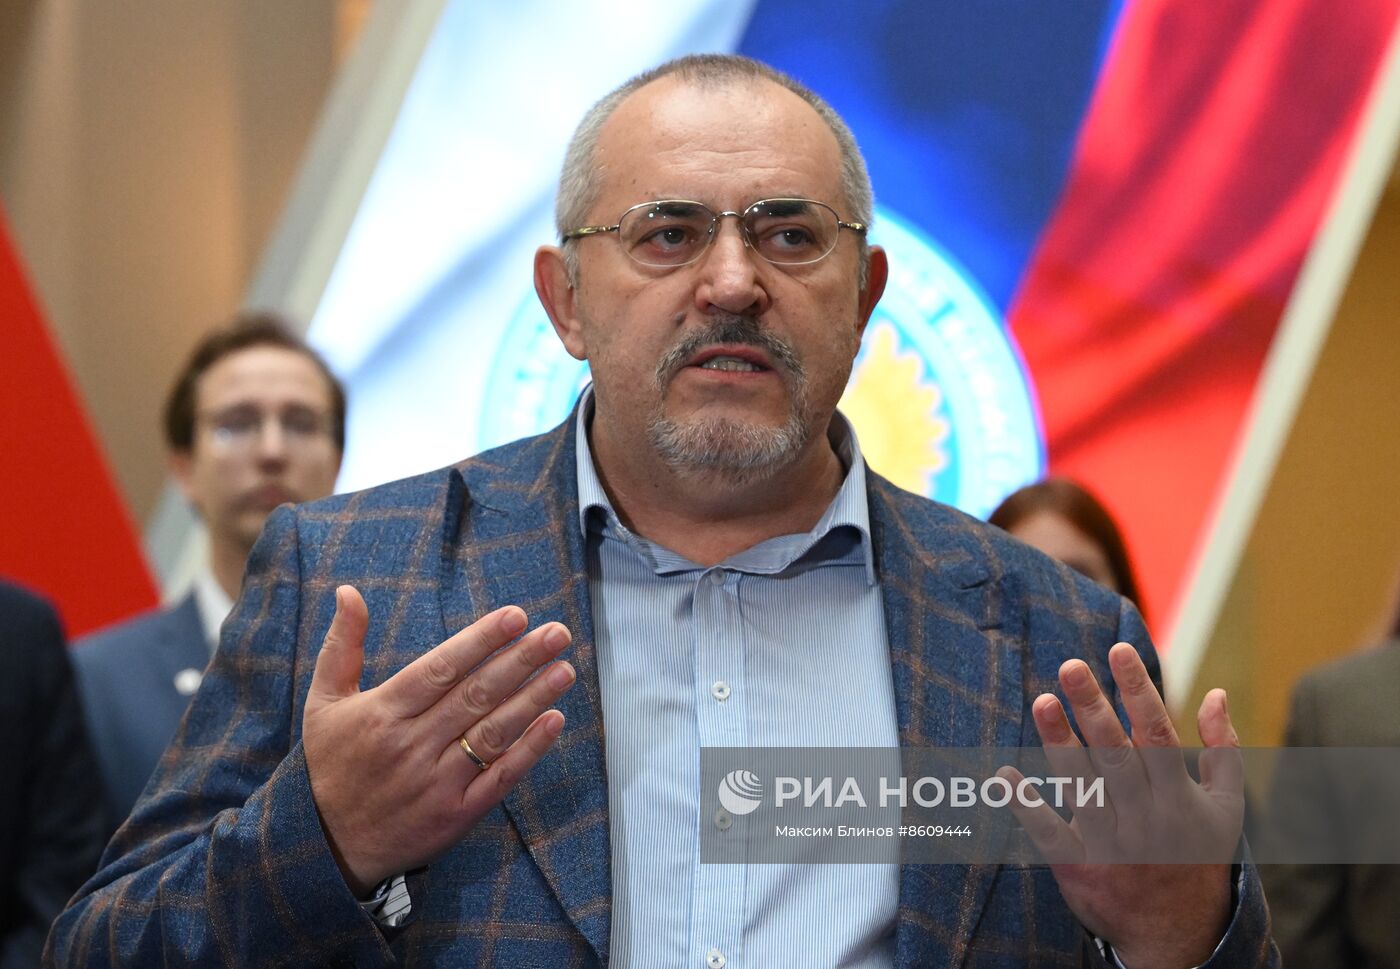 Кандидат в президенты РФ Б. Надеждин сдал в ЦИК подписи в свою поддержку